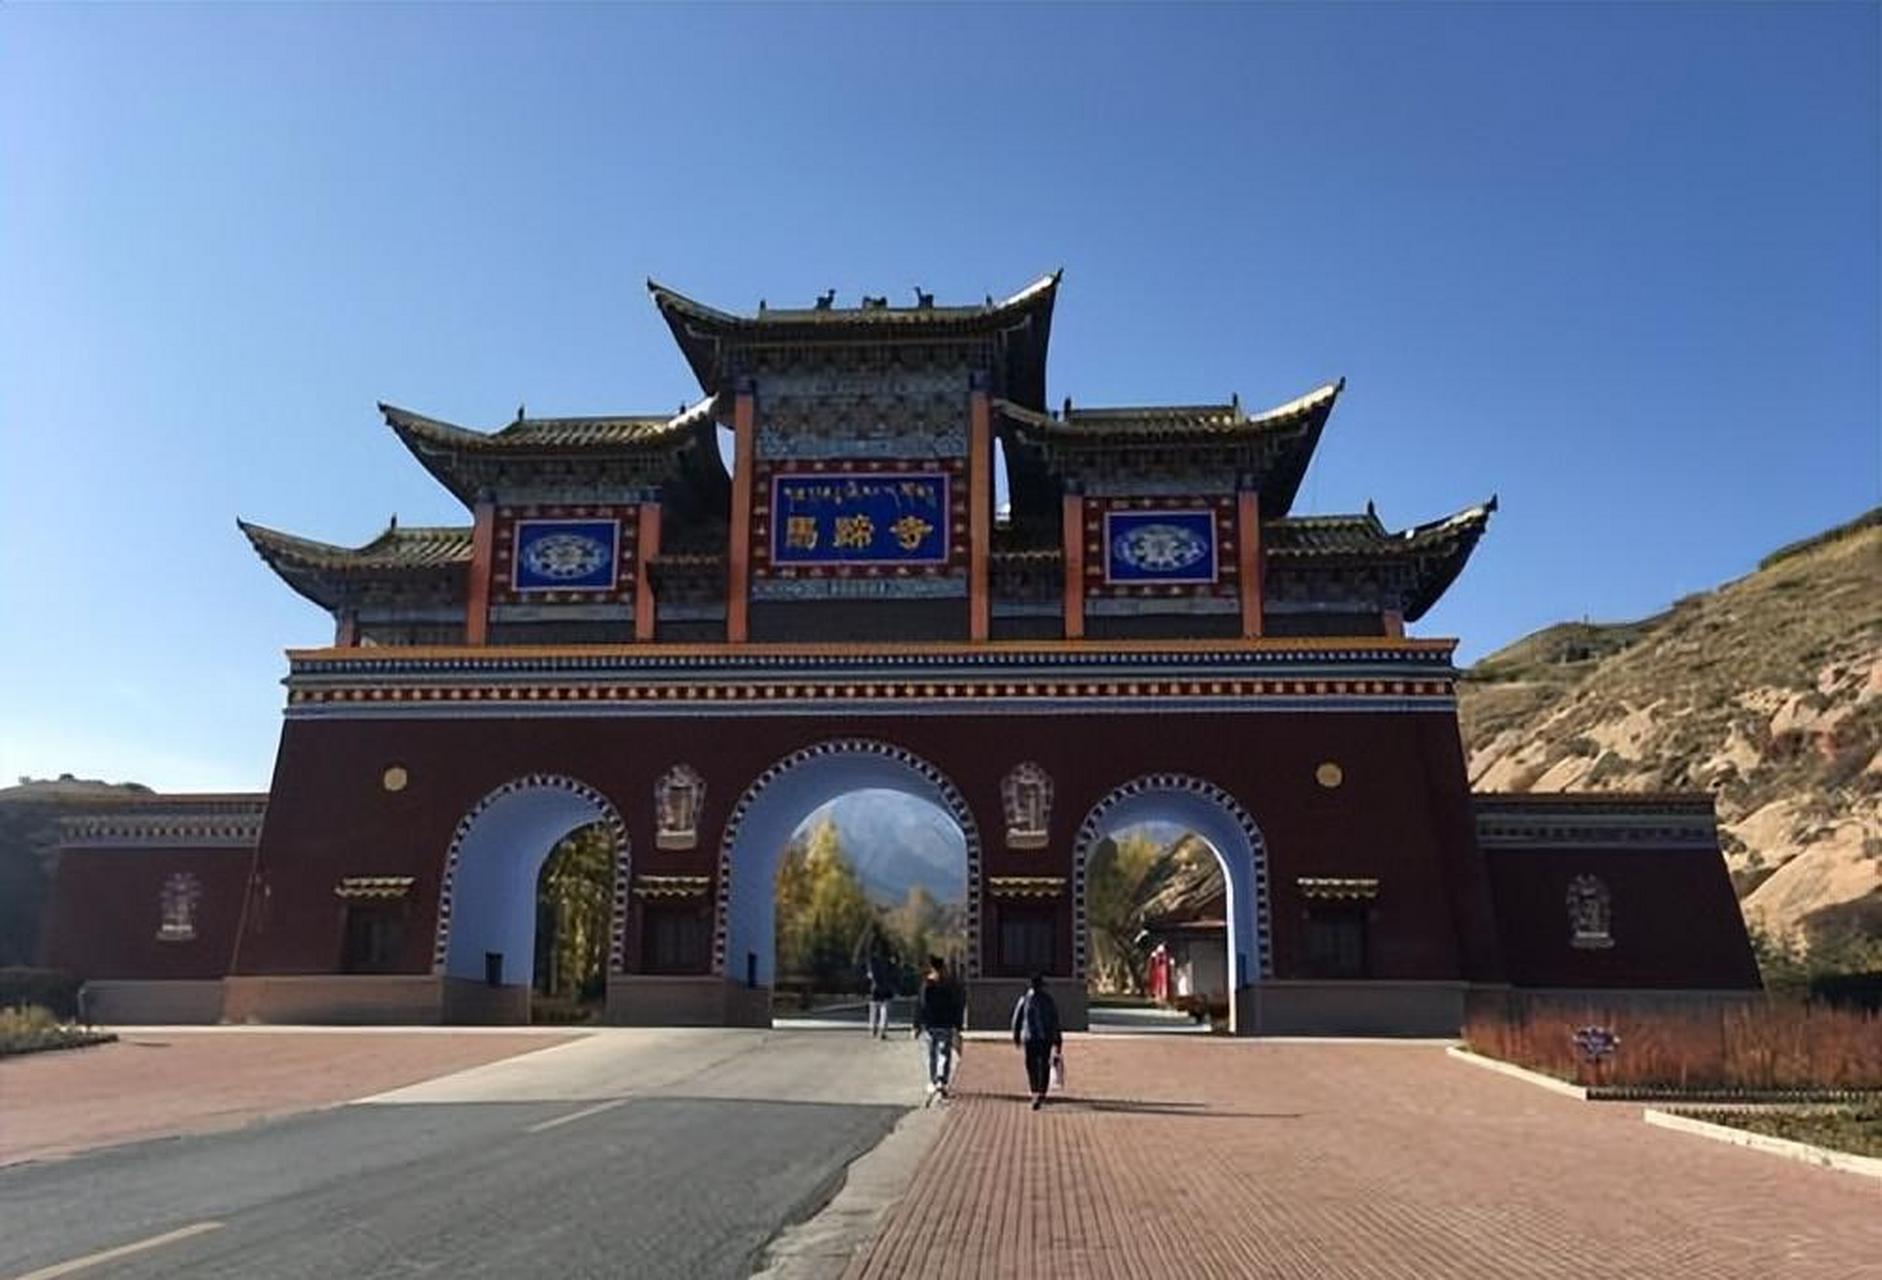 马蹄寺位于中国甘肃省肃南裕固族自治县,是一个有着